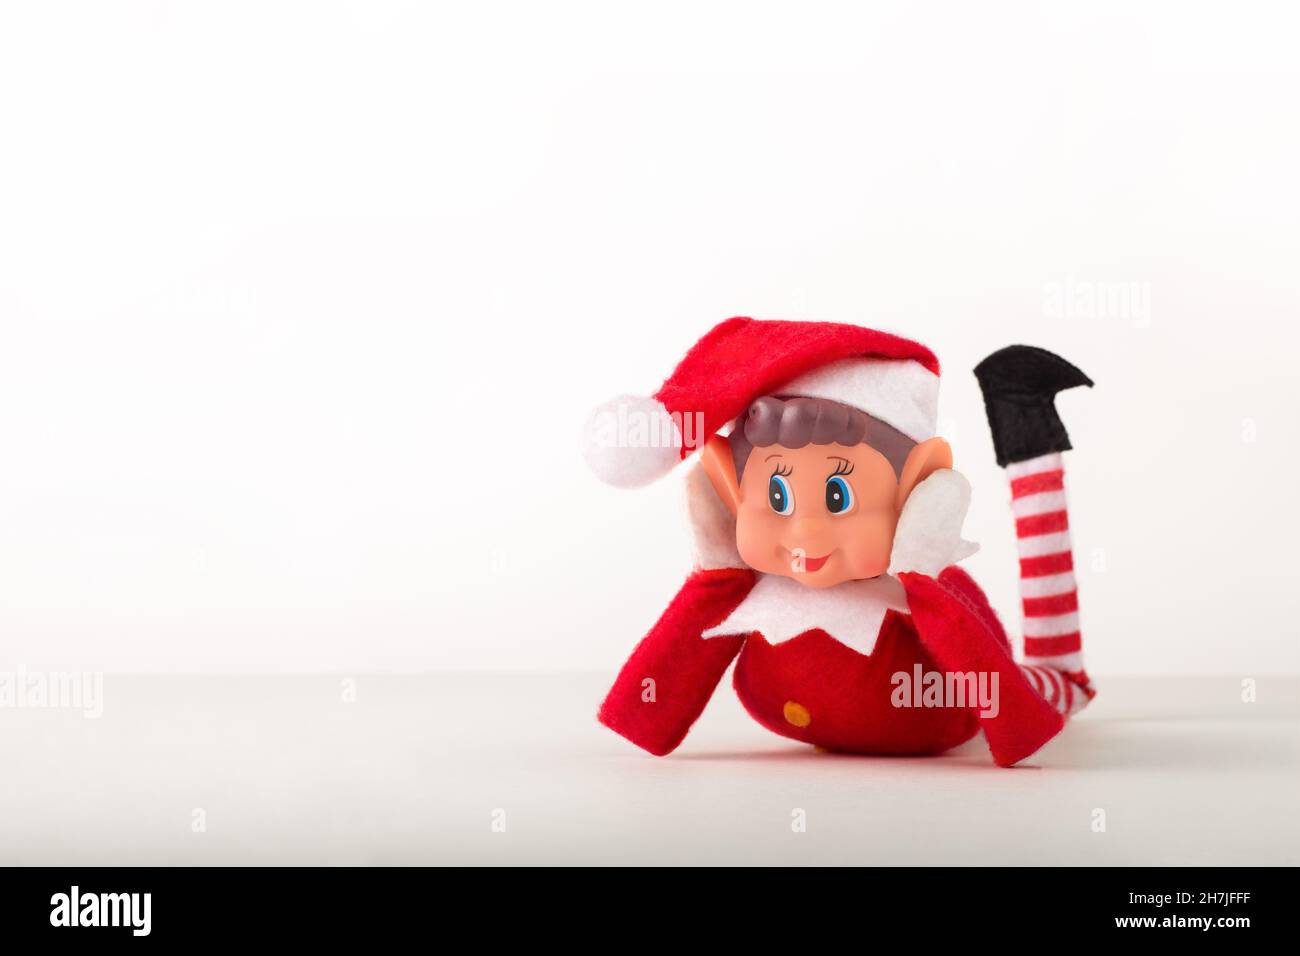 Jouet Elf de Noël sur fond blanc avec espace de copie.Esprit de Noël, tradition de Noël. Banque D'Images